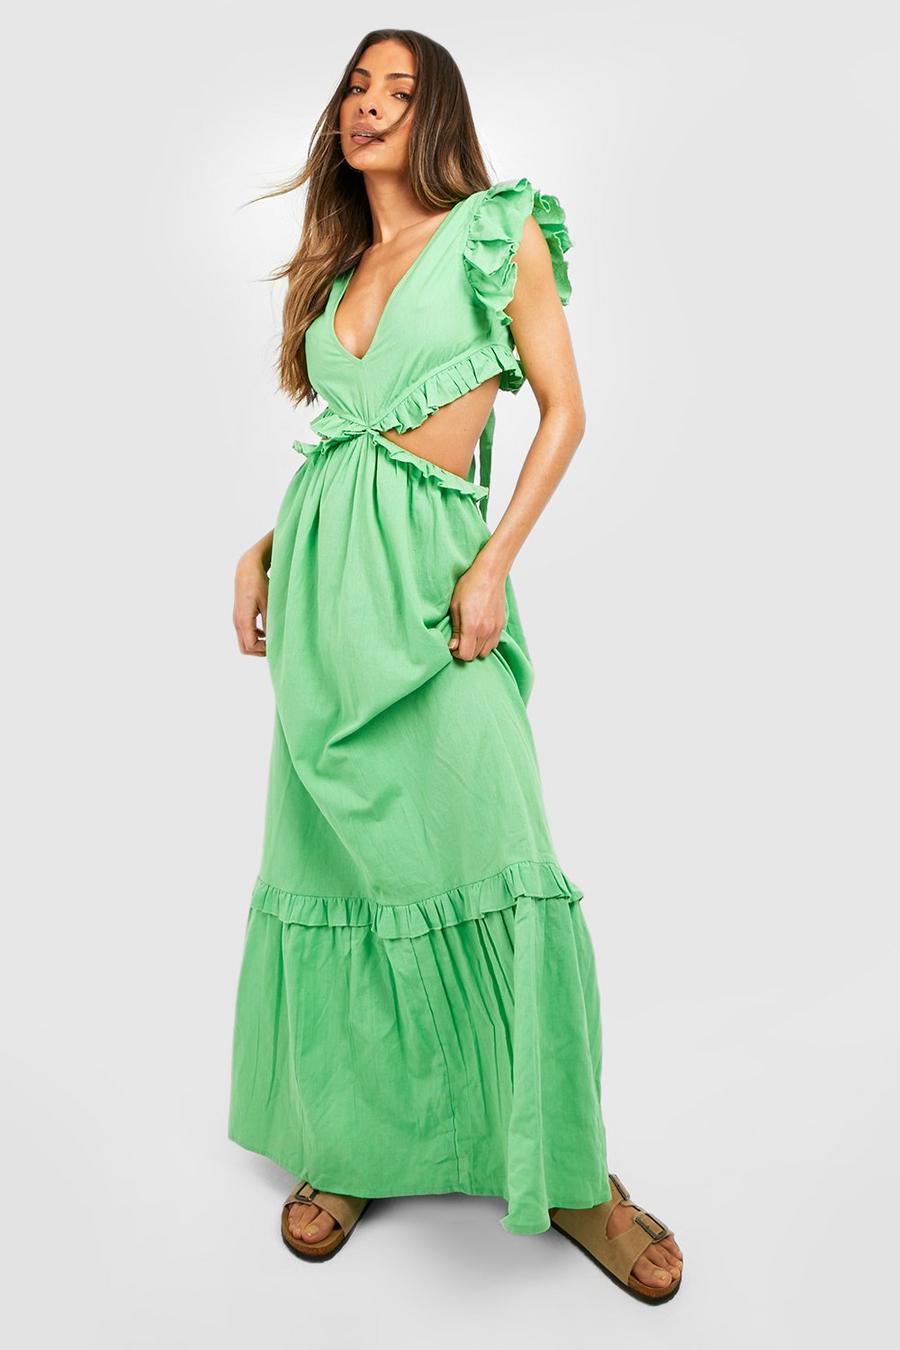 Apple green Linen Ruffle Cut Out Maxi Dress